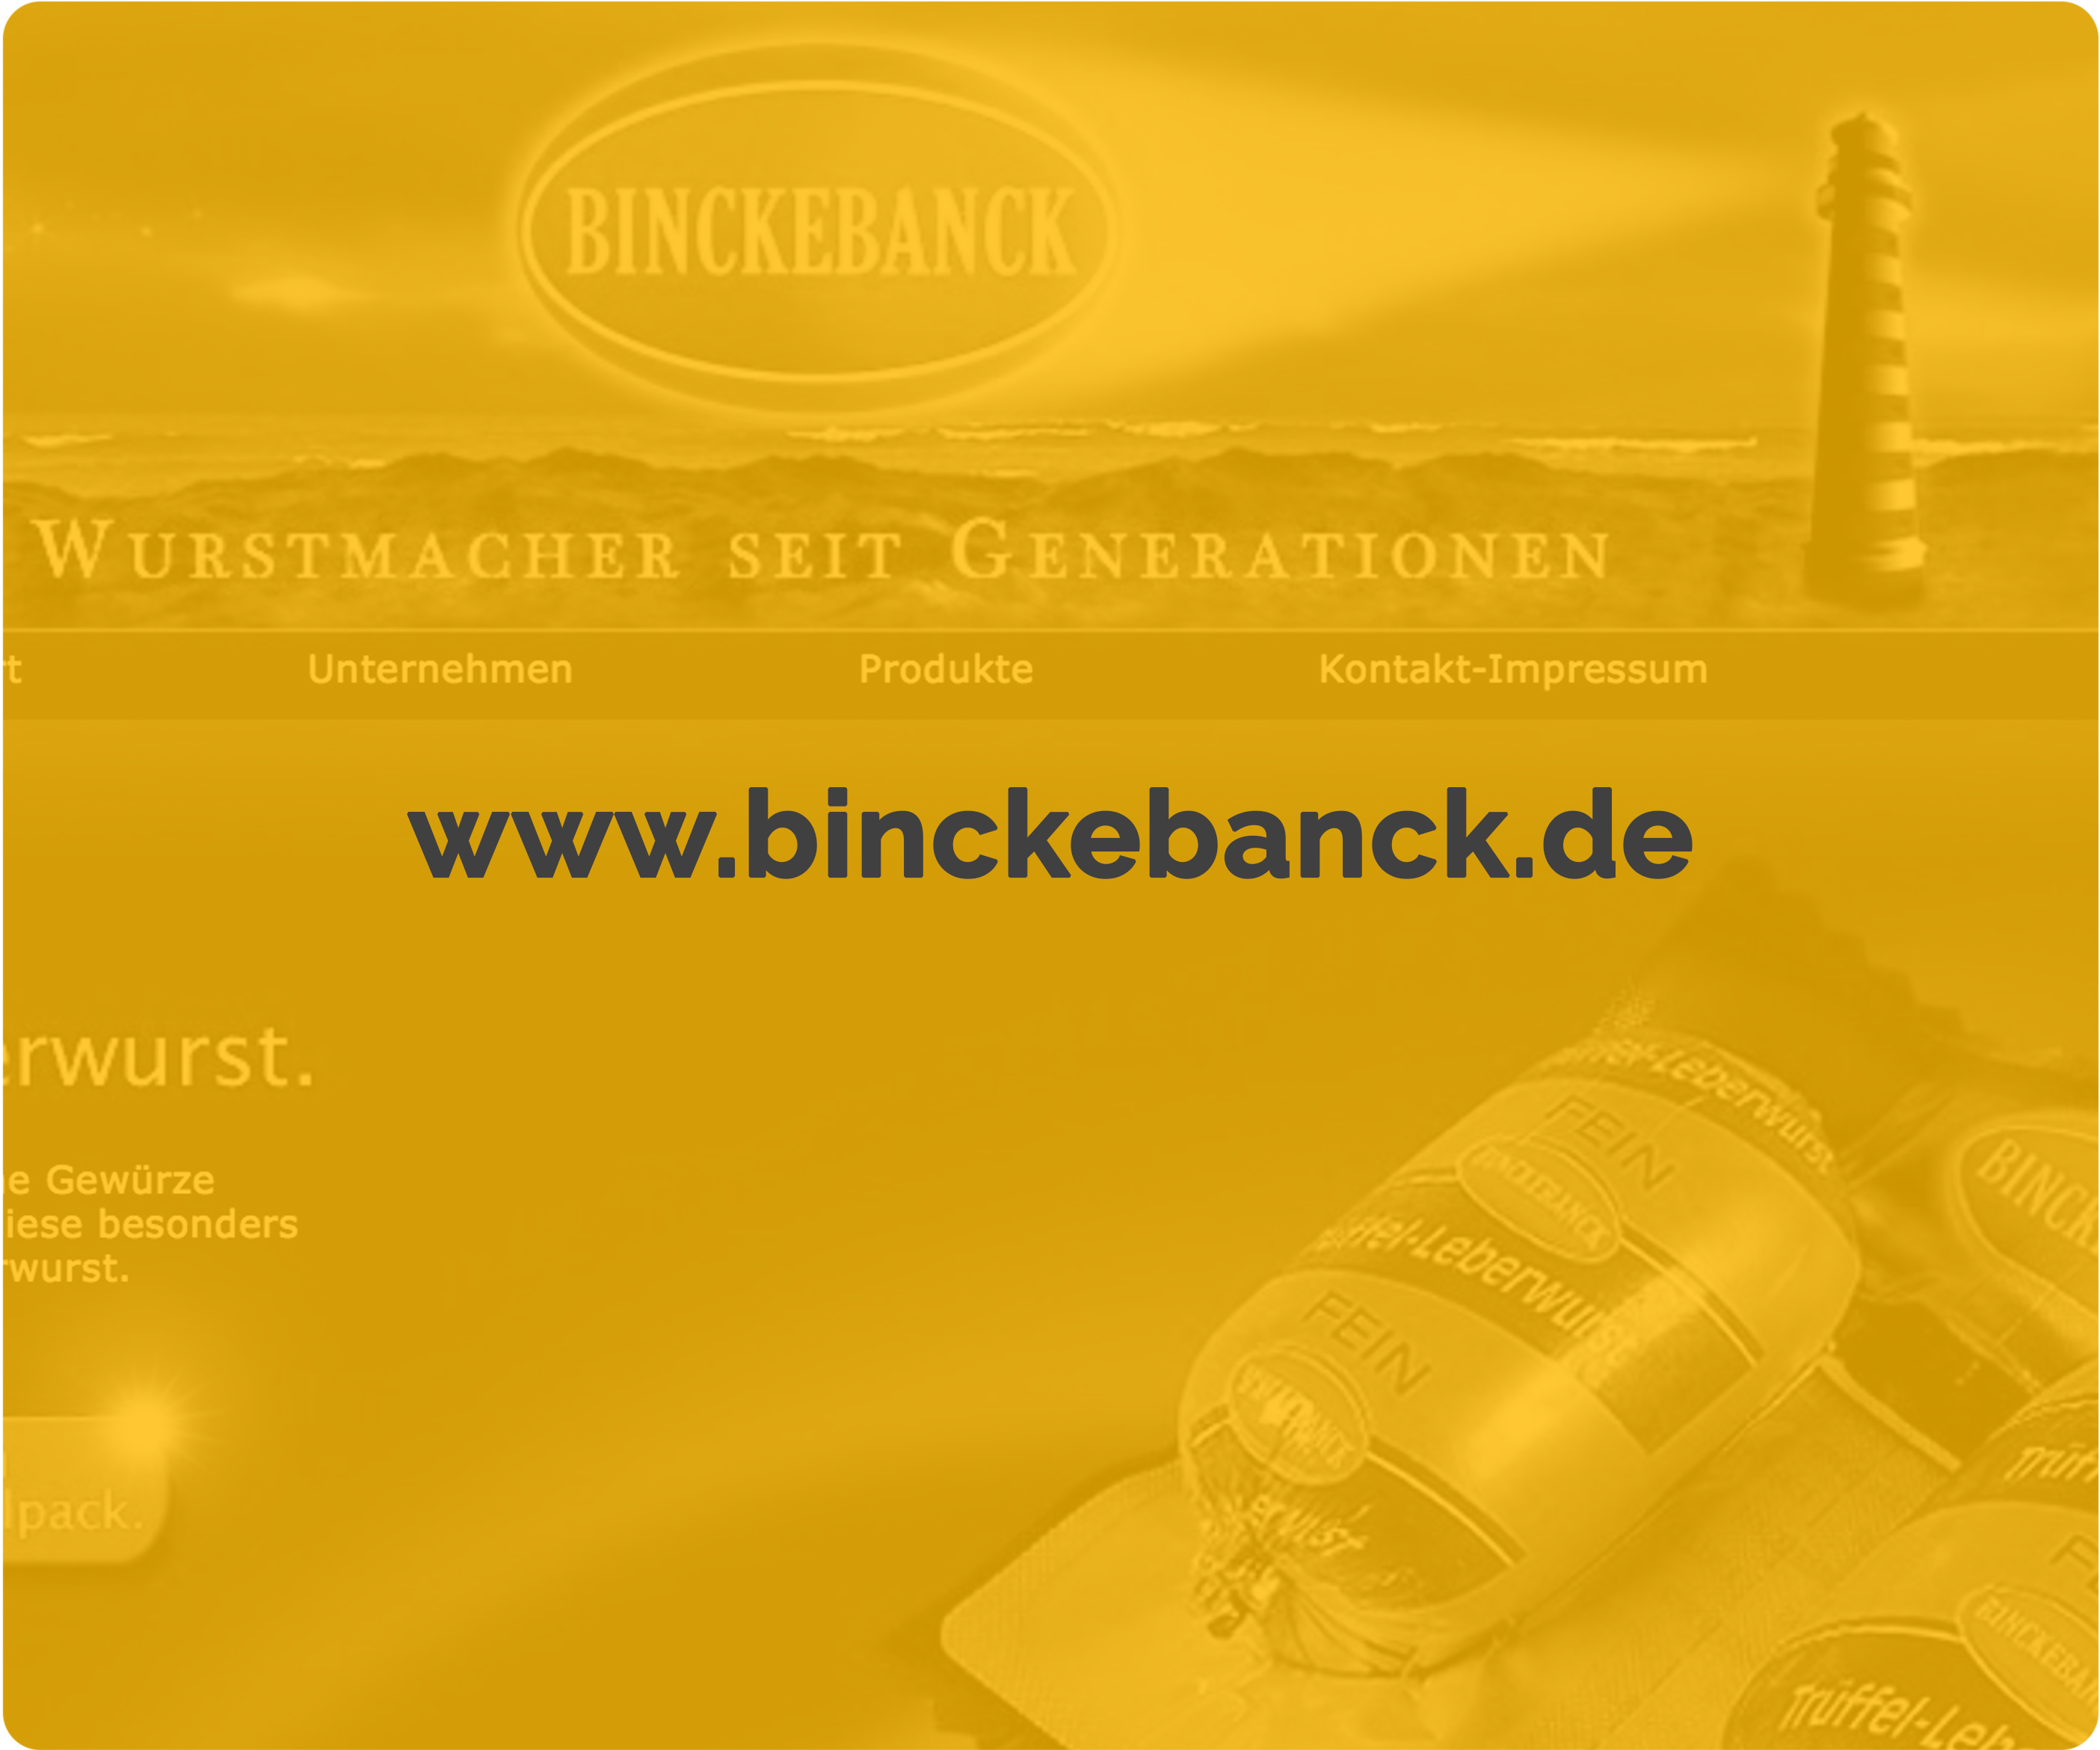 Beispielbild: www.binckebanck.de